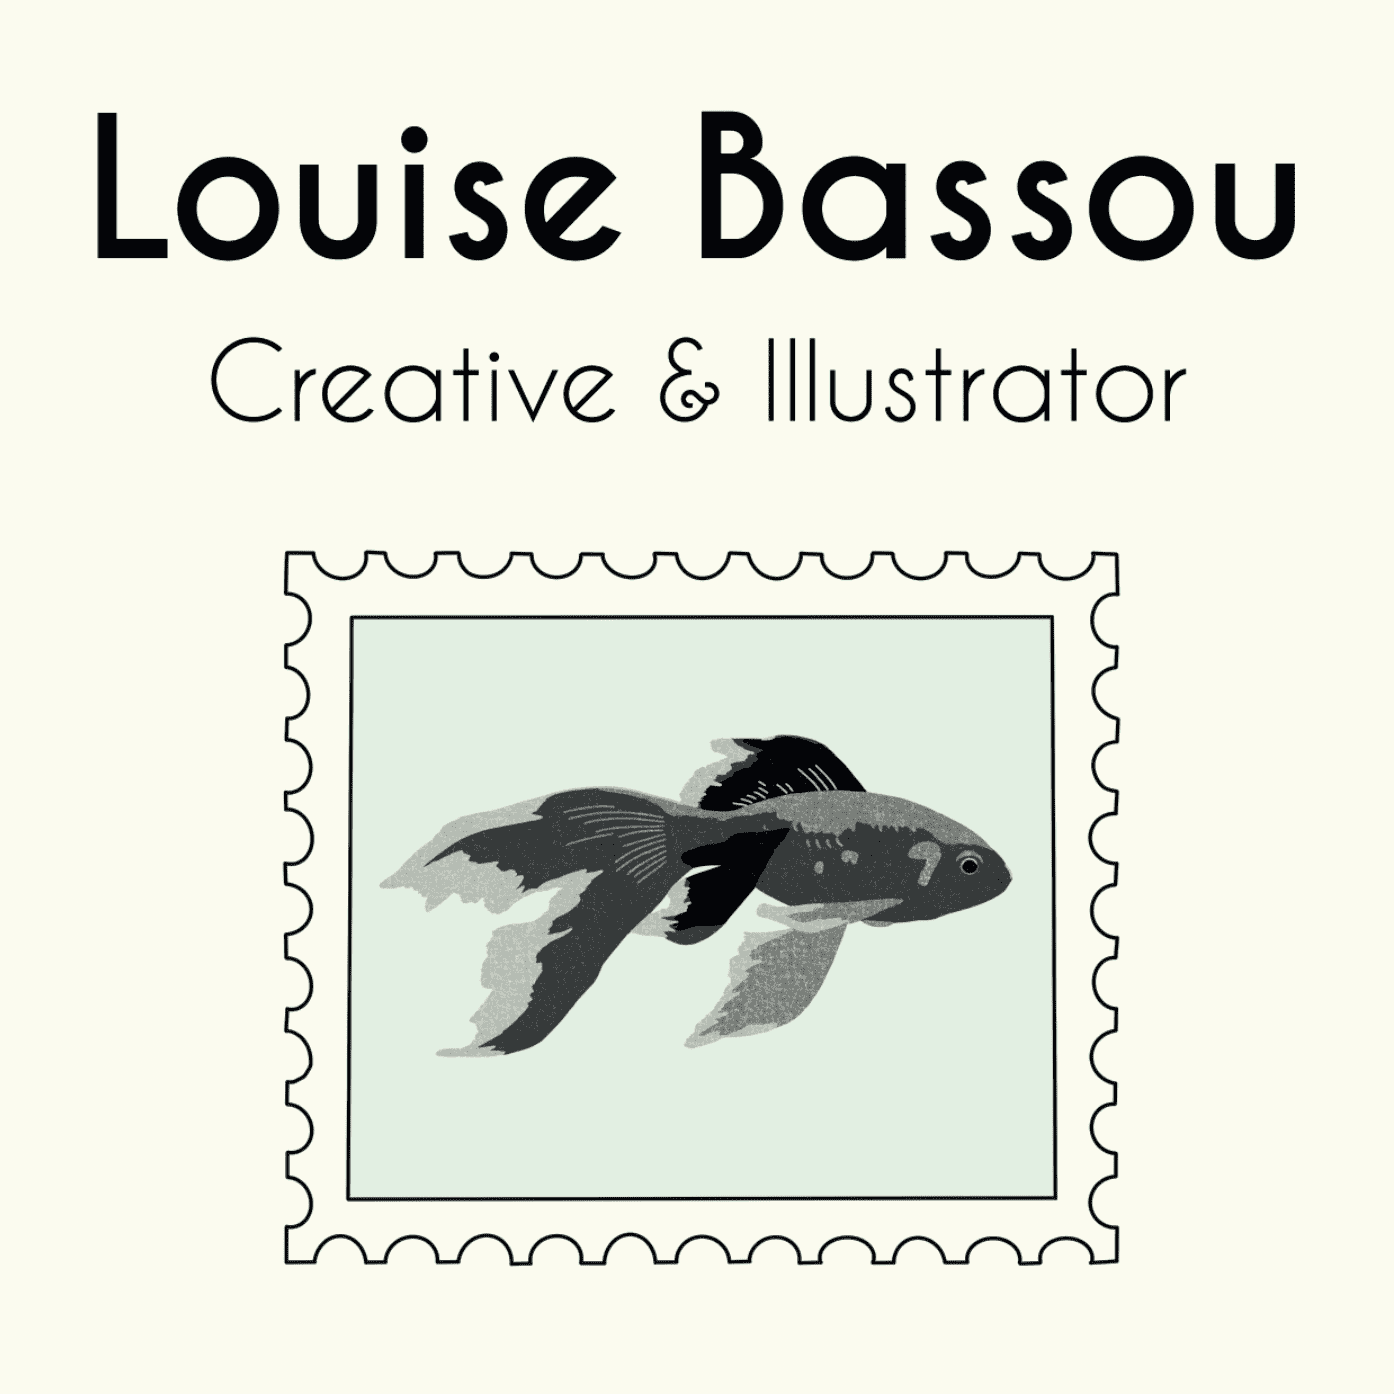 Louise Bassou